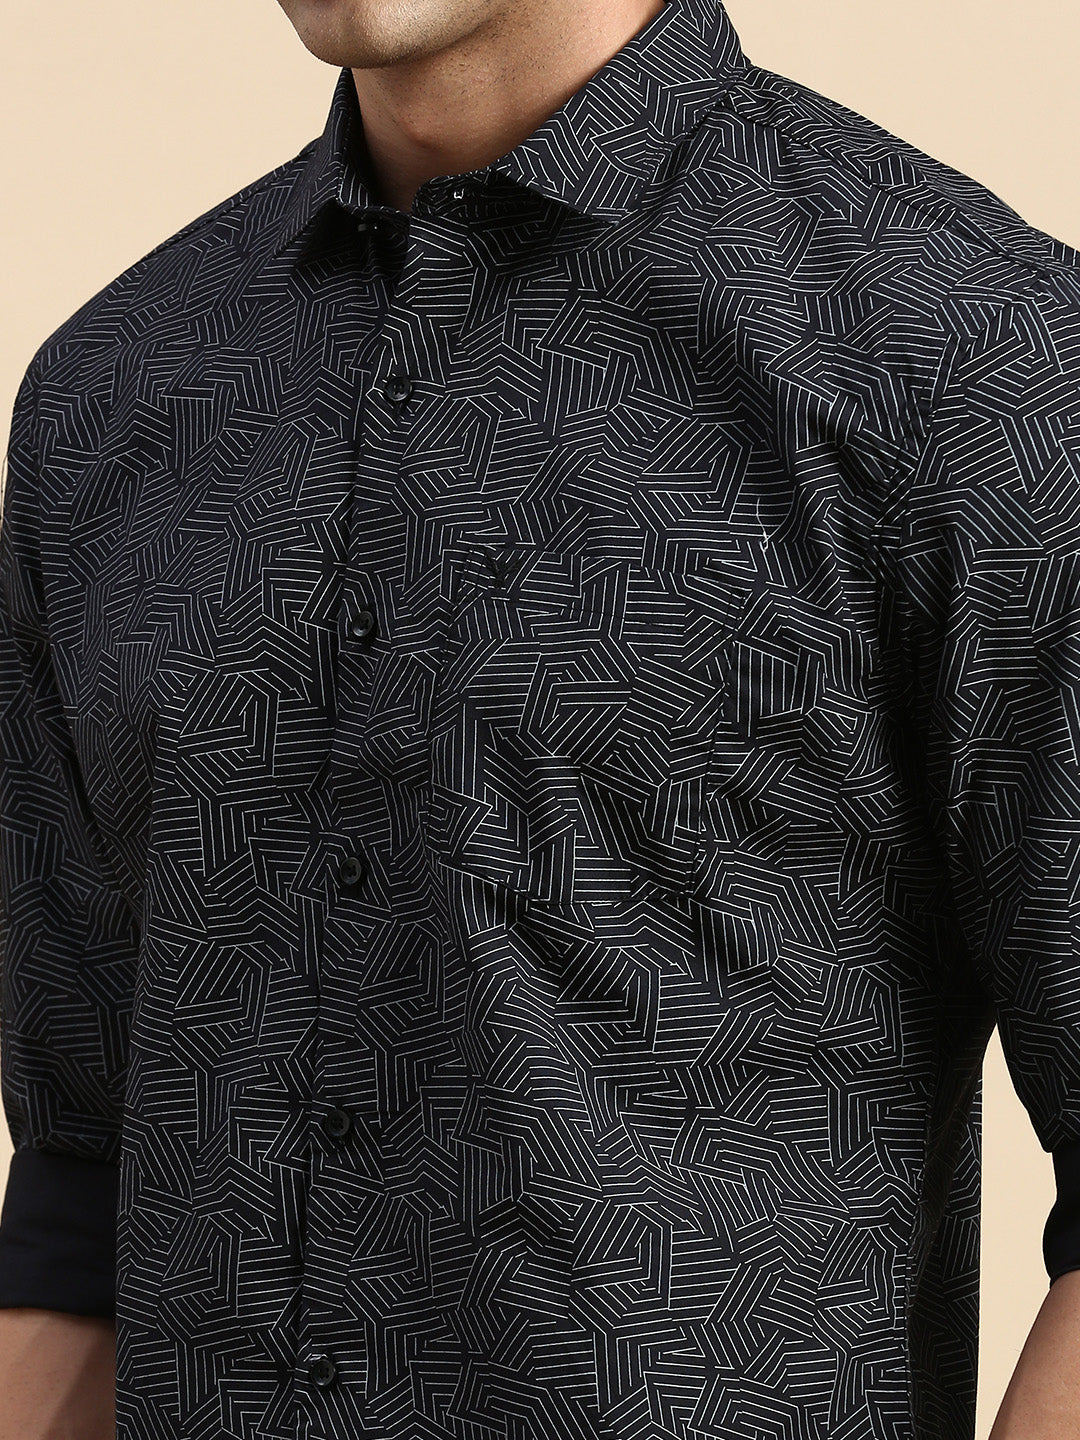 Men Black Printed Casual Shirt